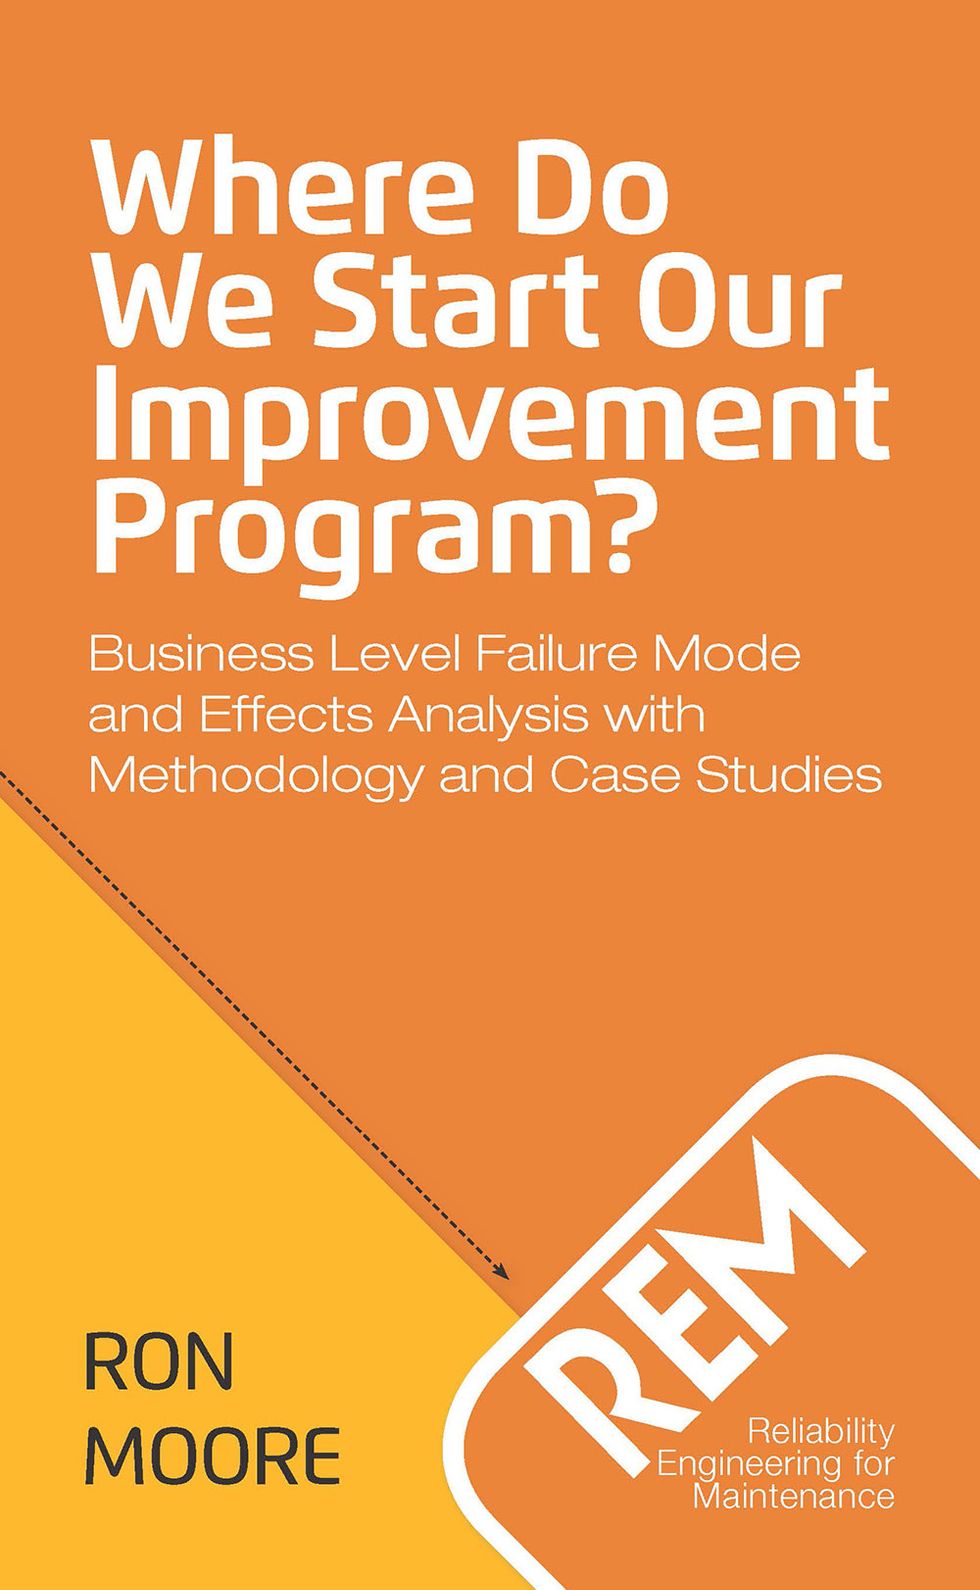  Where Do We Start Our Improvement Program? 